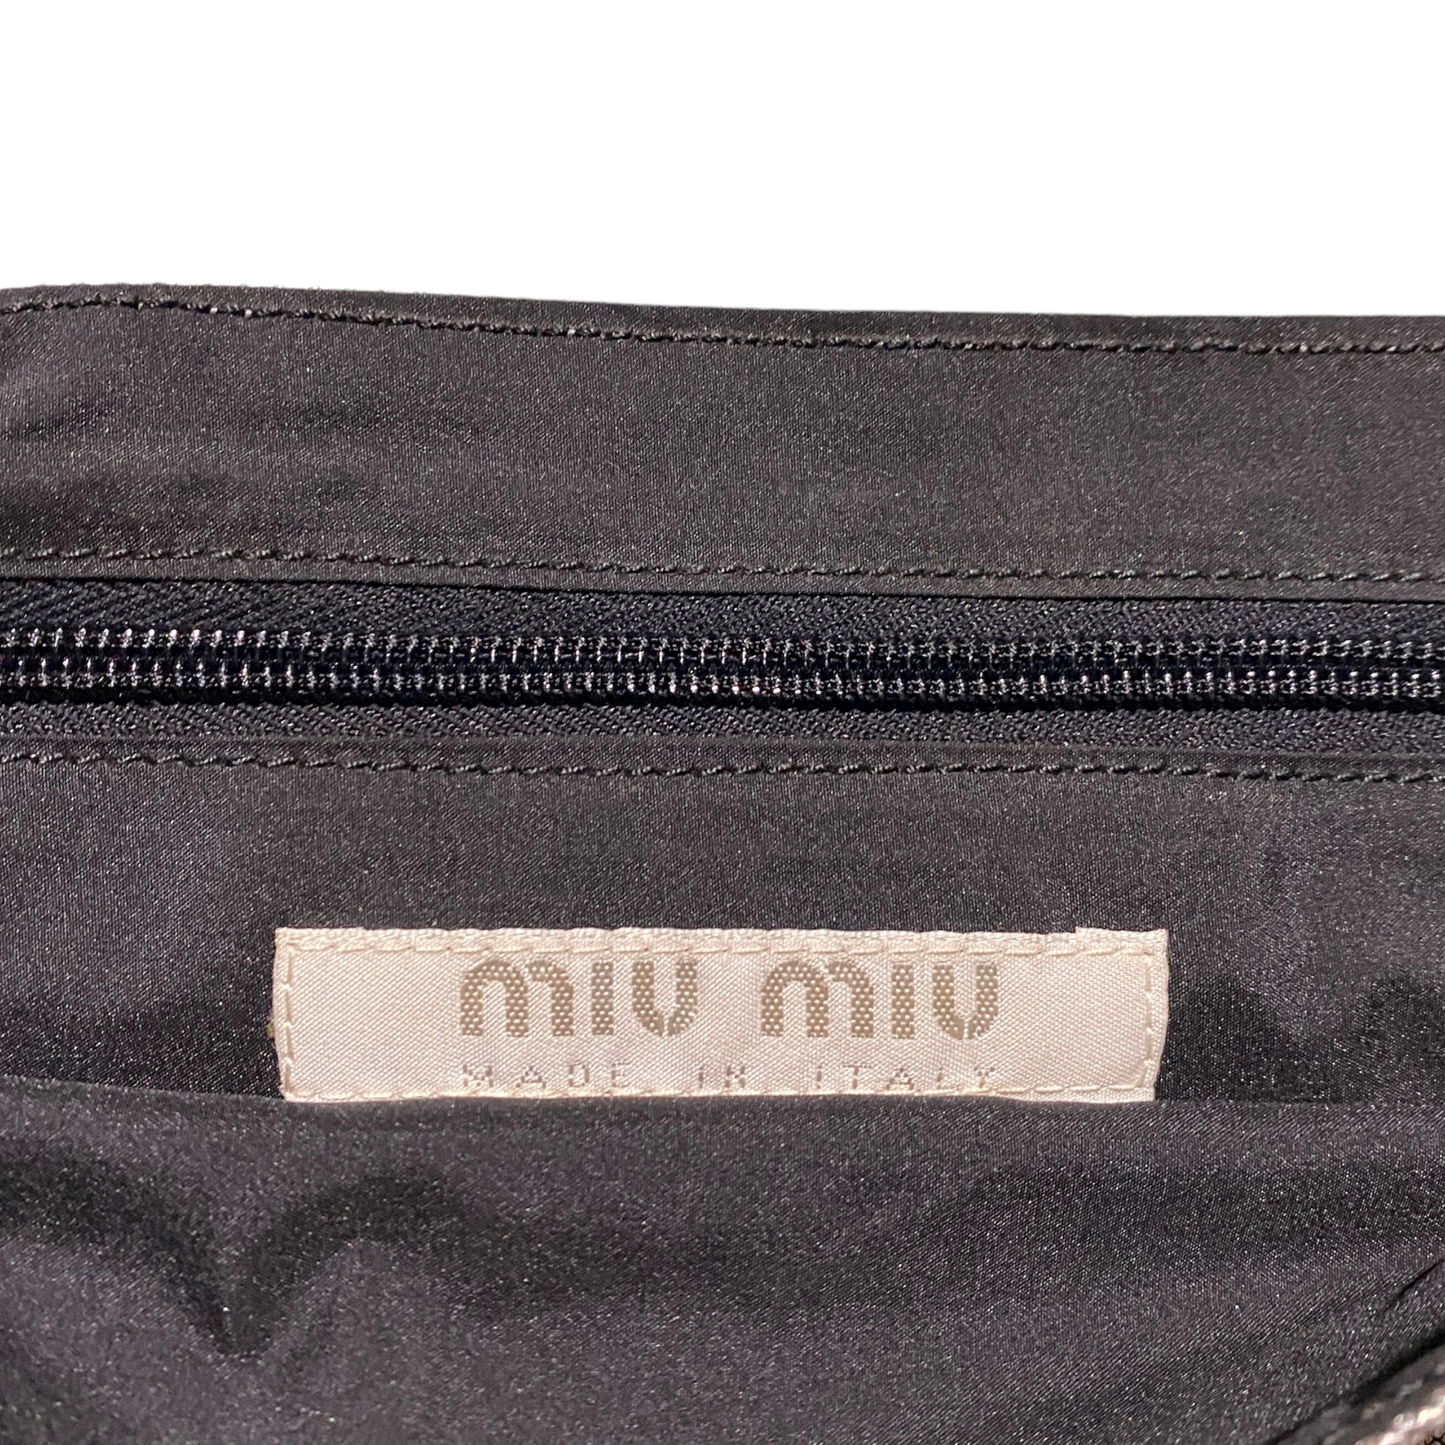 S/S 2000 Miu Miu handbag